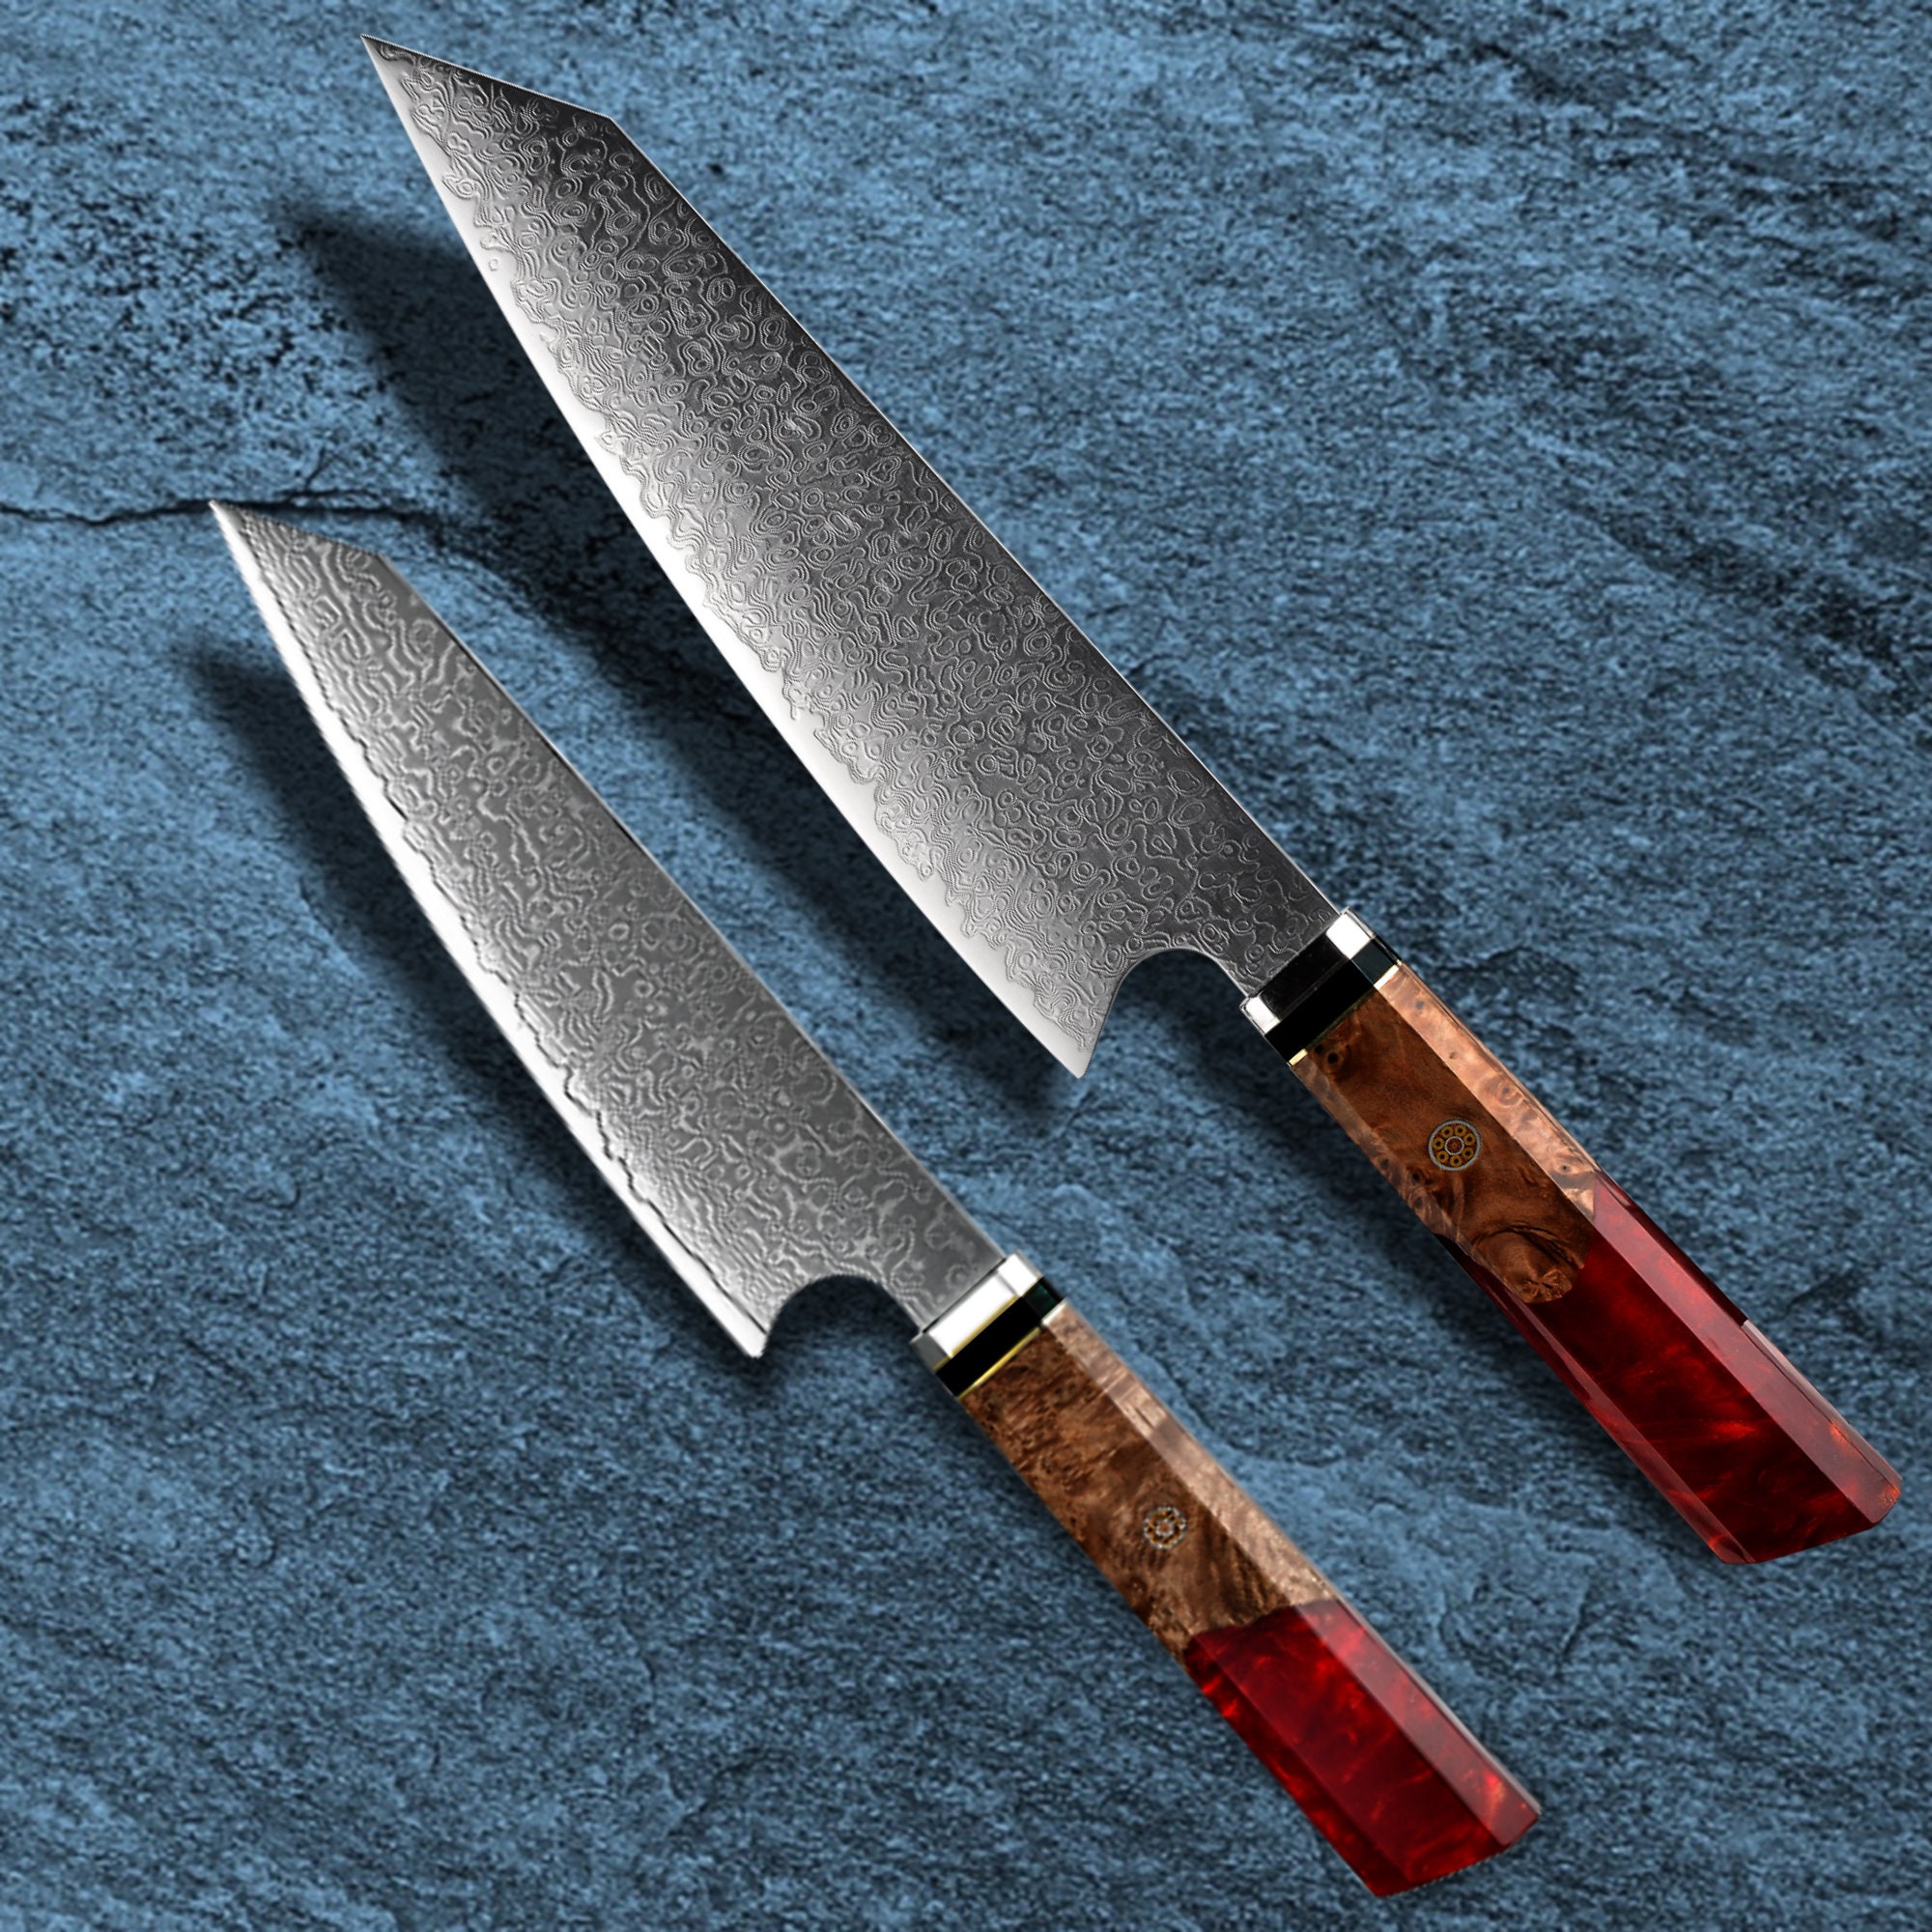 20 Juegos de cuchillos de cocina profesionales y duraderos